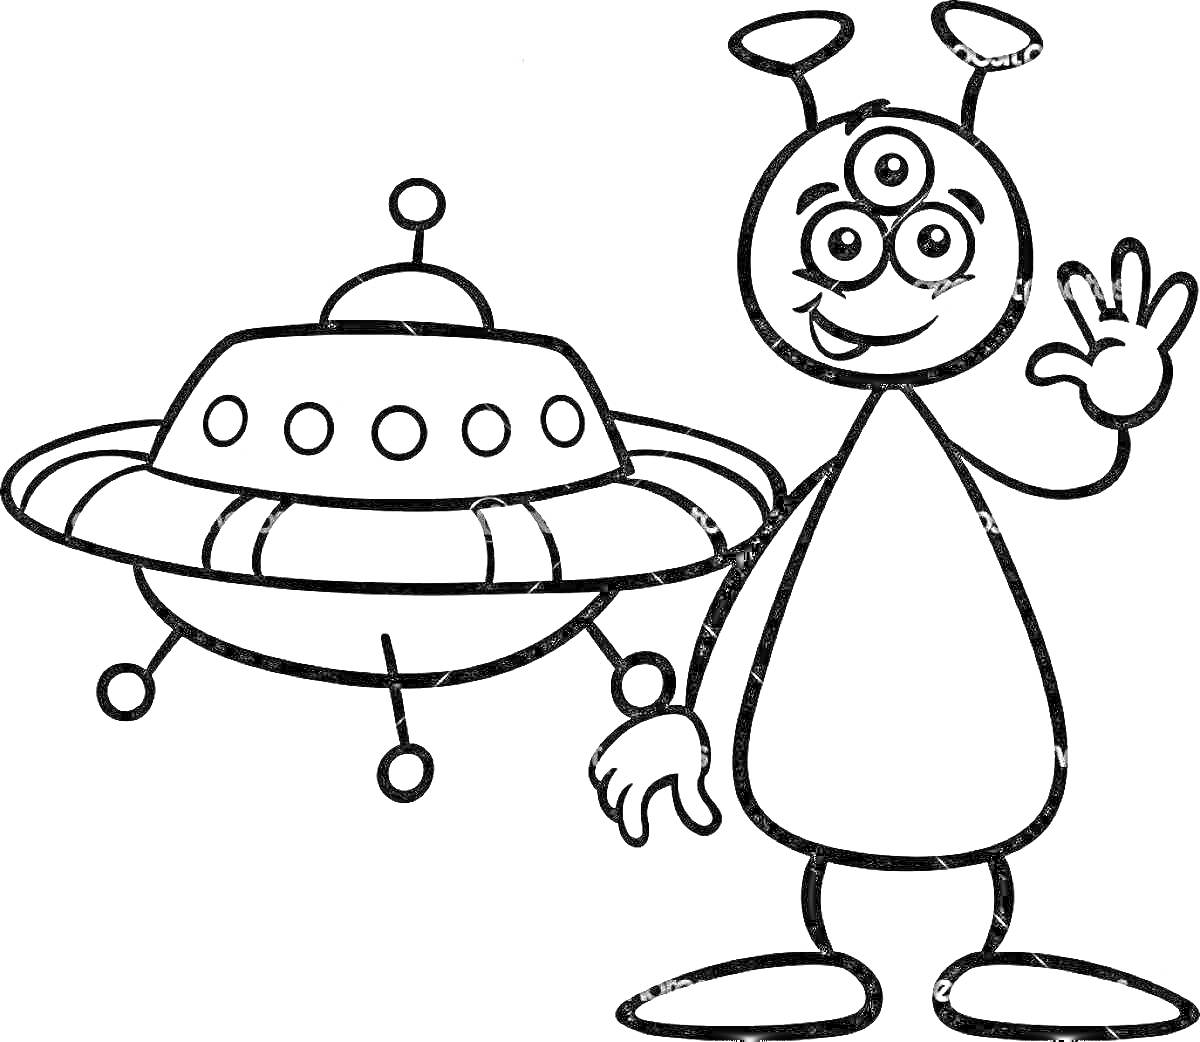 Инопланетянин с тремя глазами и антеннами, машущий рукой, рядом с летающей тарелкой